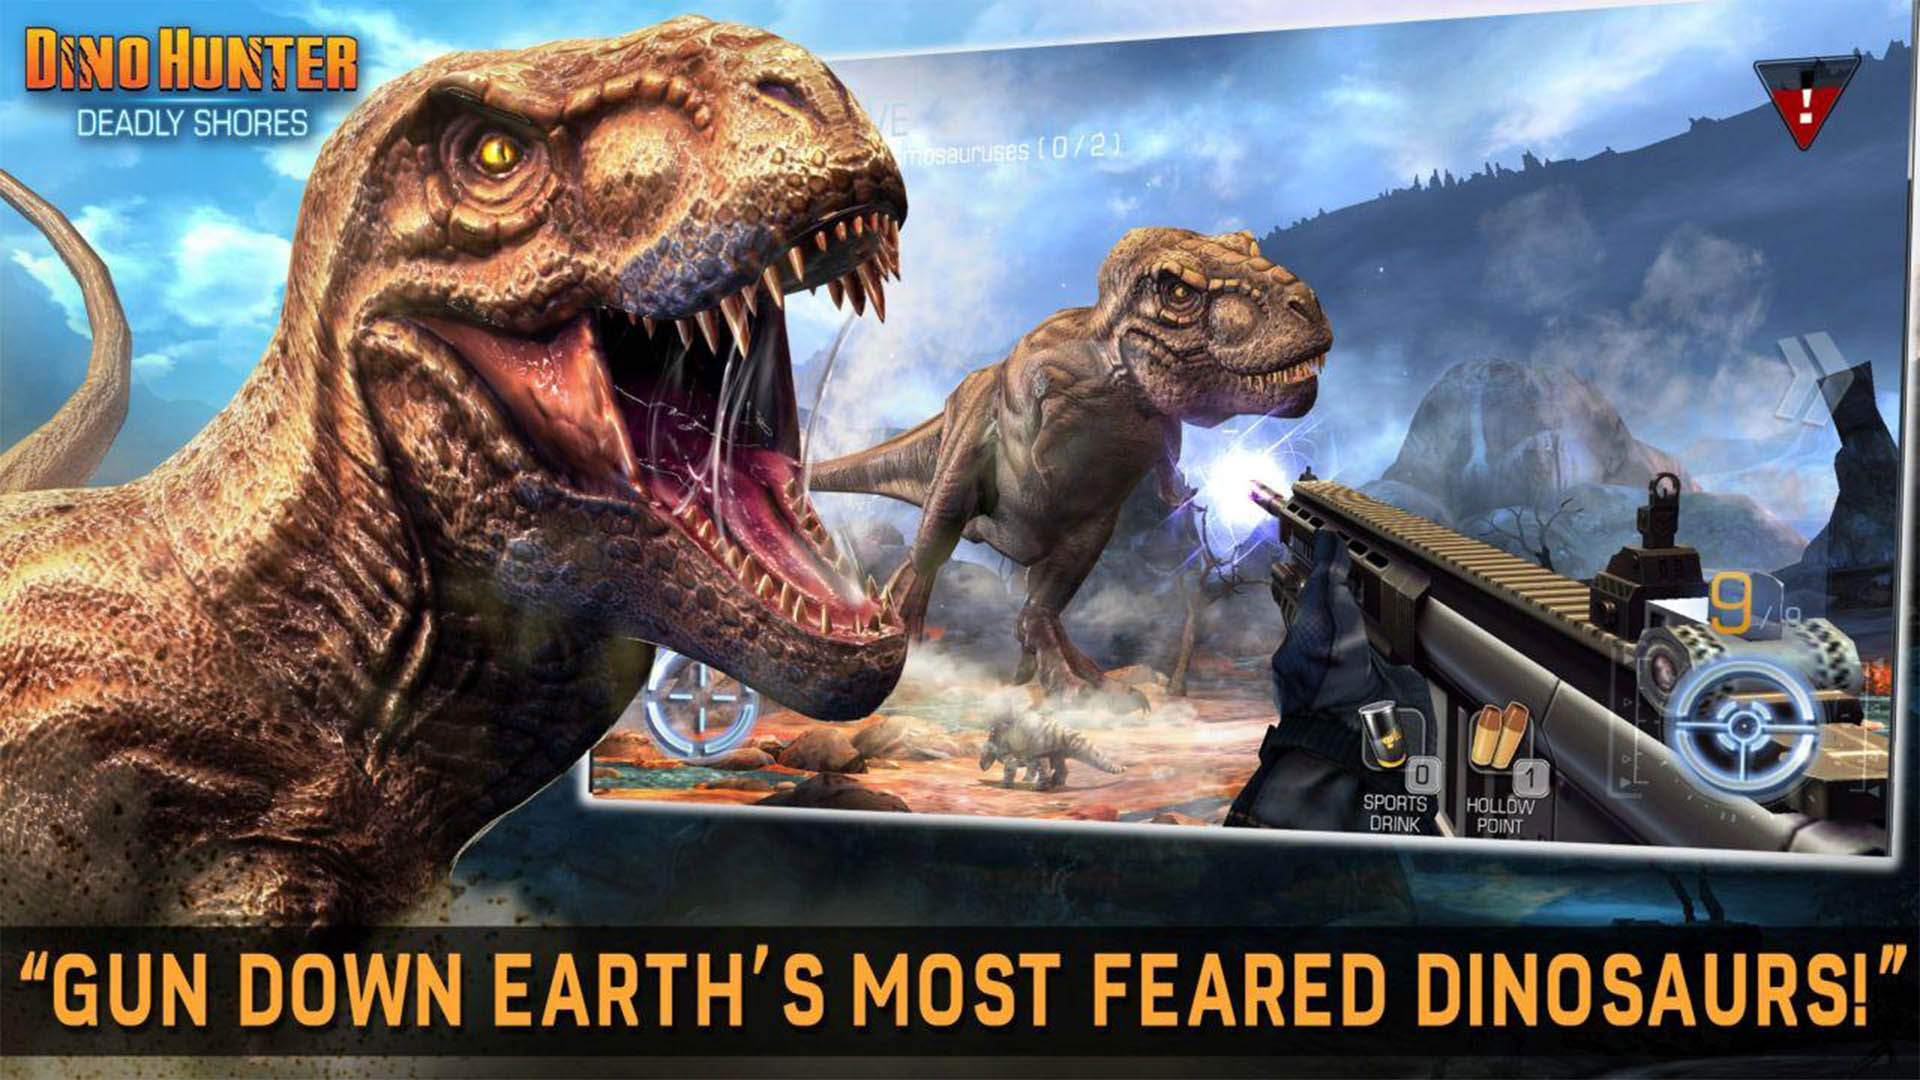 Dino Hunter Deadly Shores screenshot 2022